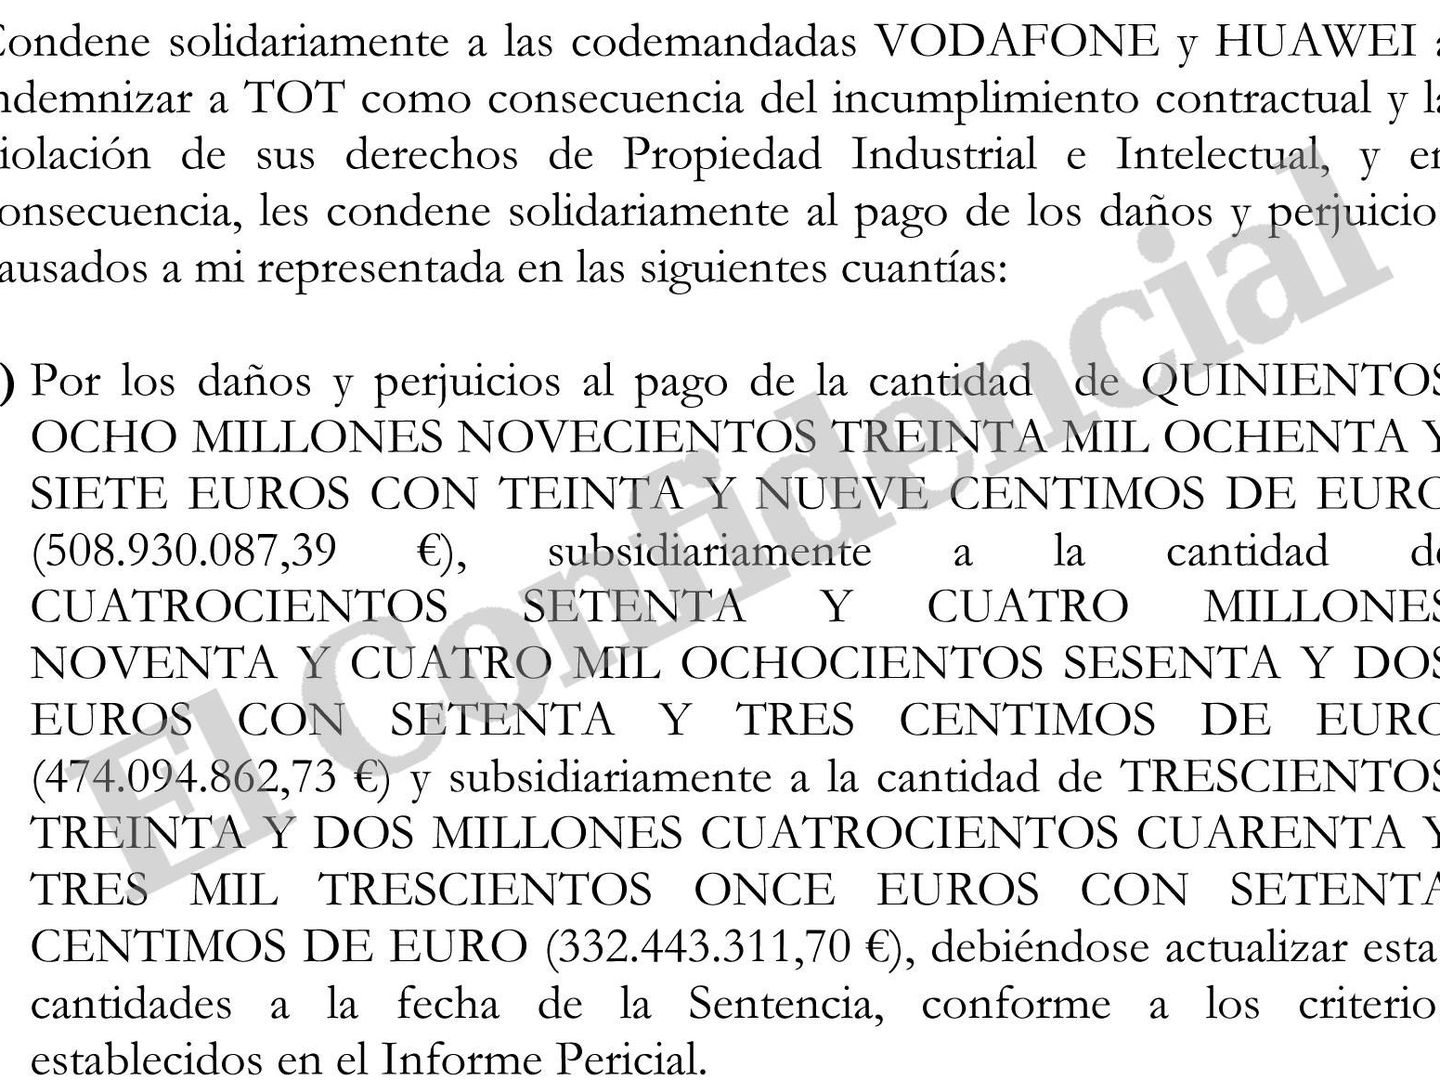 Extracto de la demanda que TOT ha interpuesto contra Vodafone y Huawei.